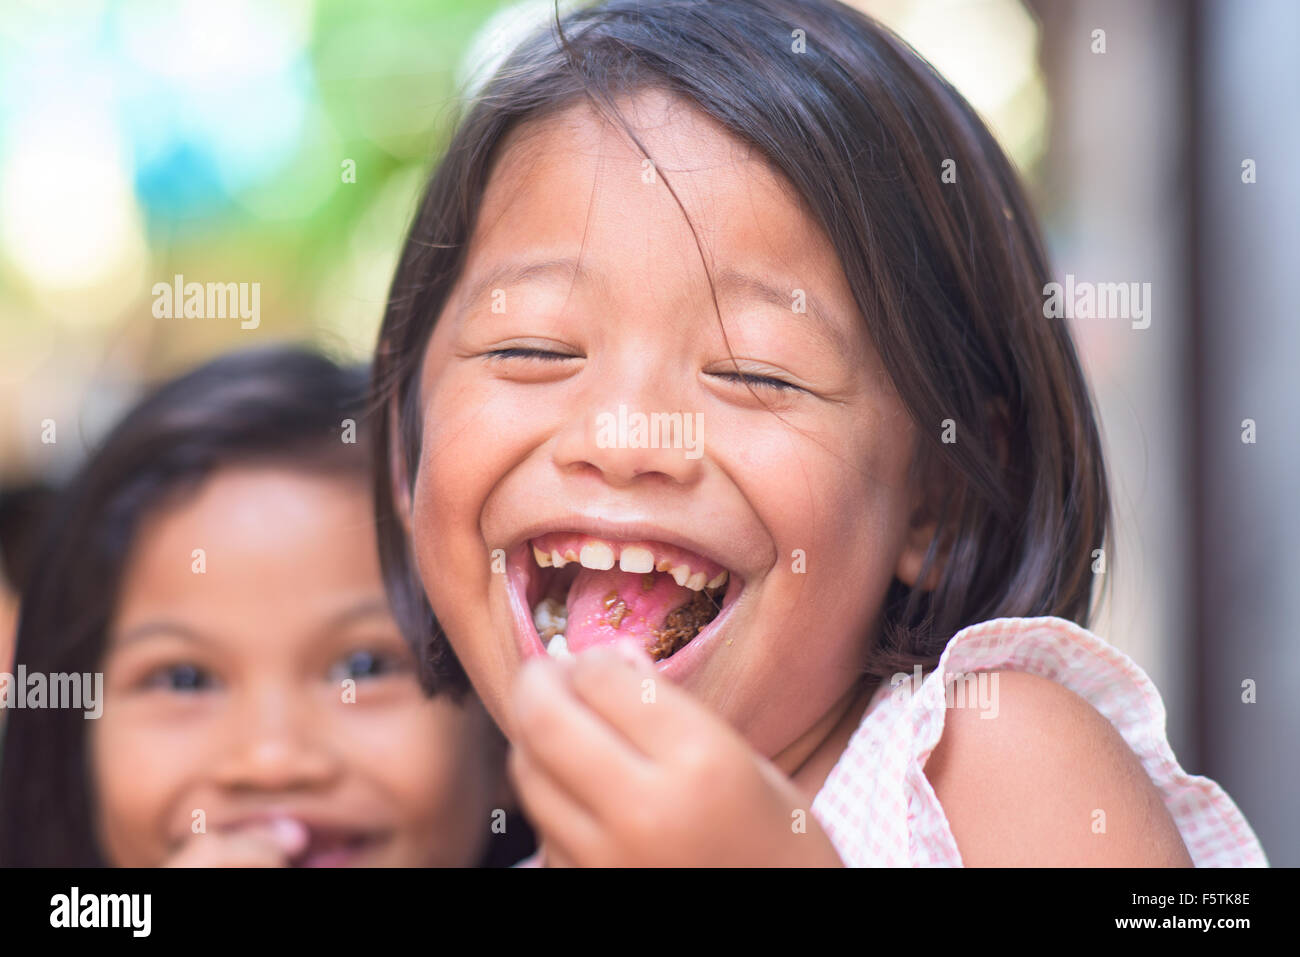 Philippinische Mädchen Lächeln während des Essens Süßigkeiten. Stockfoto